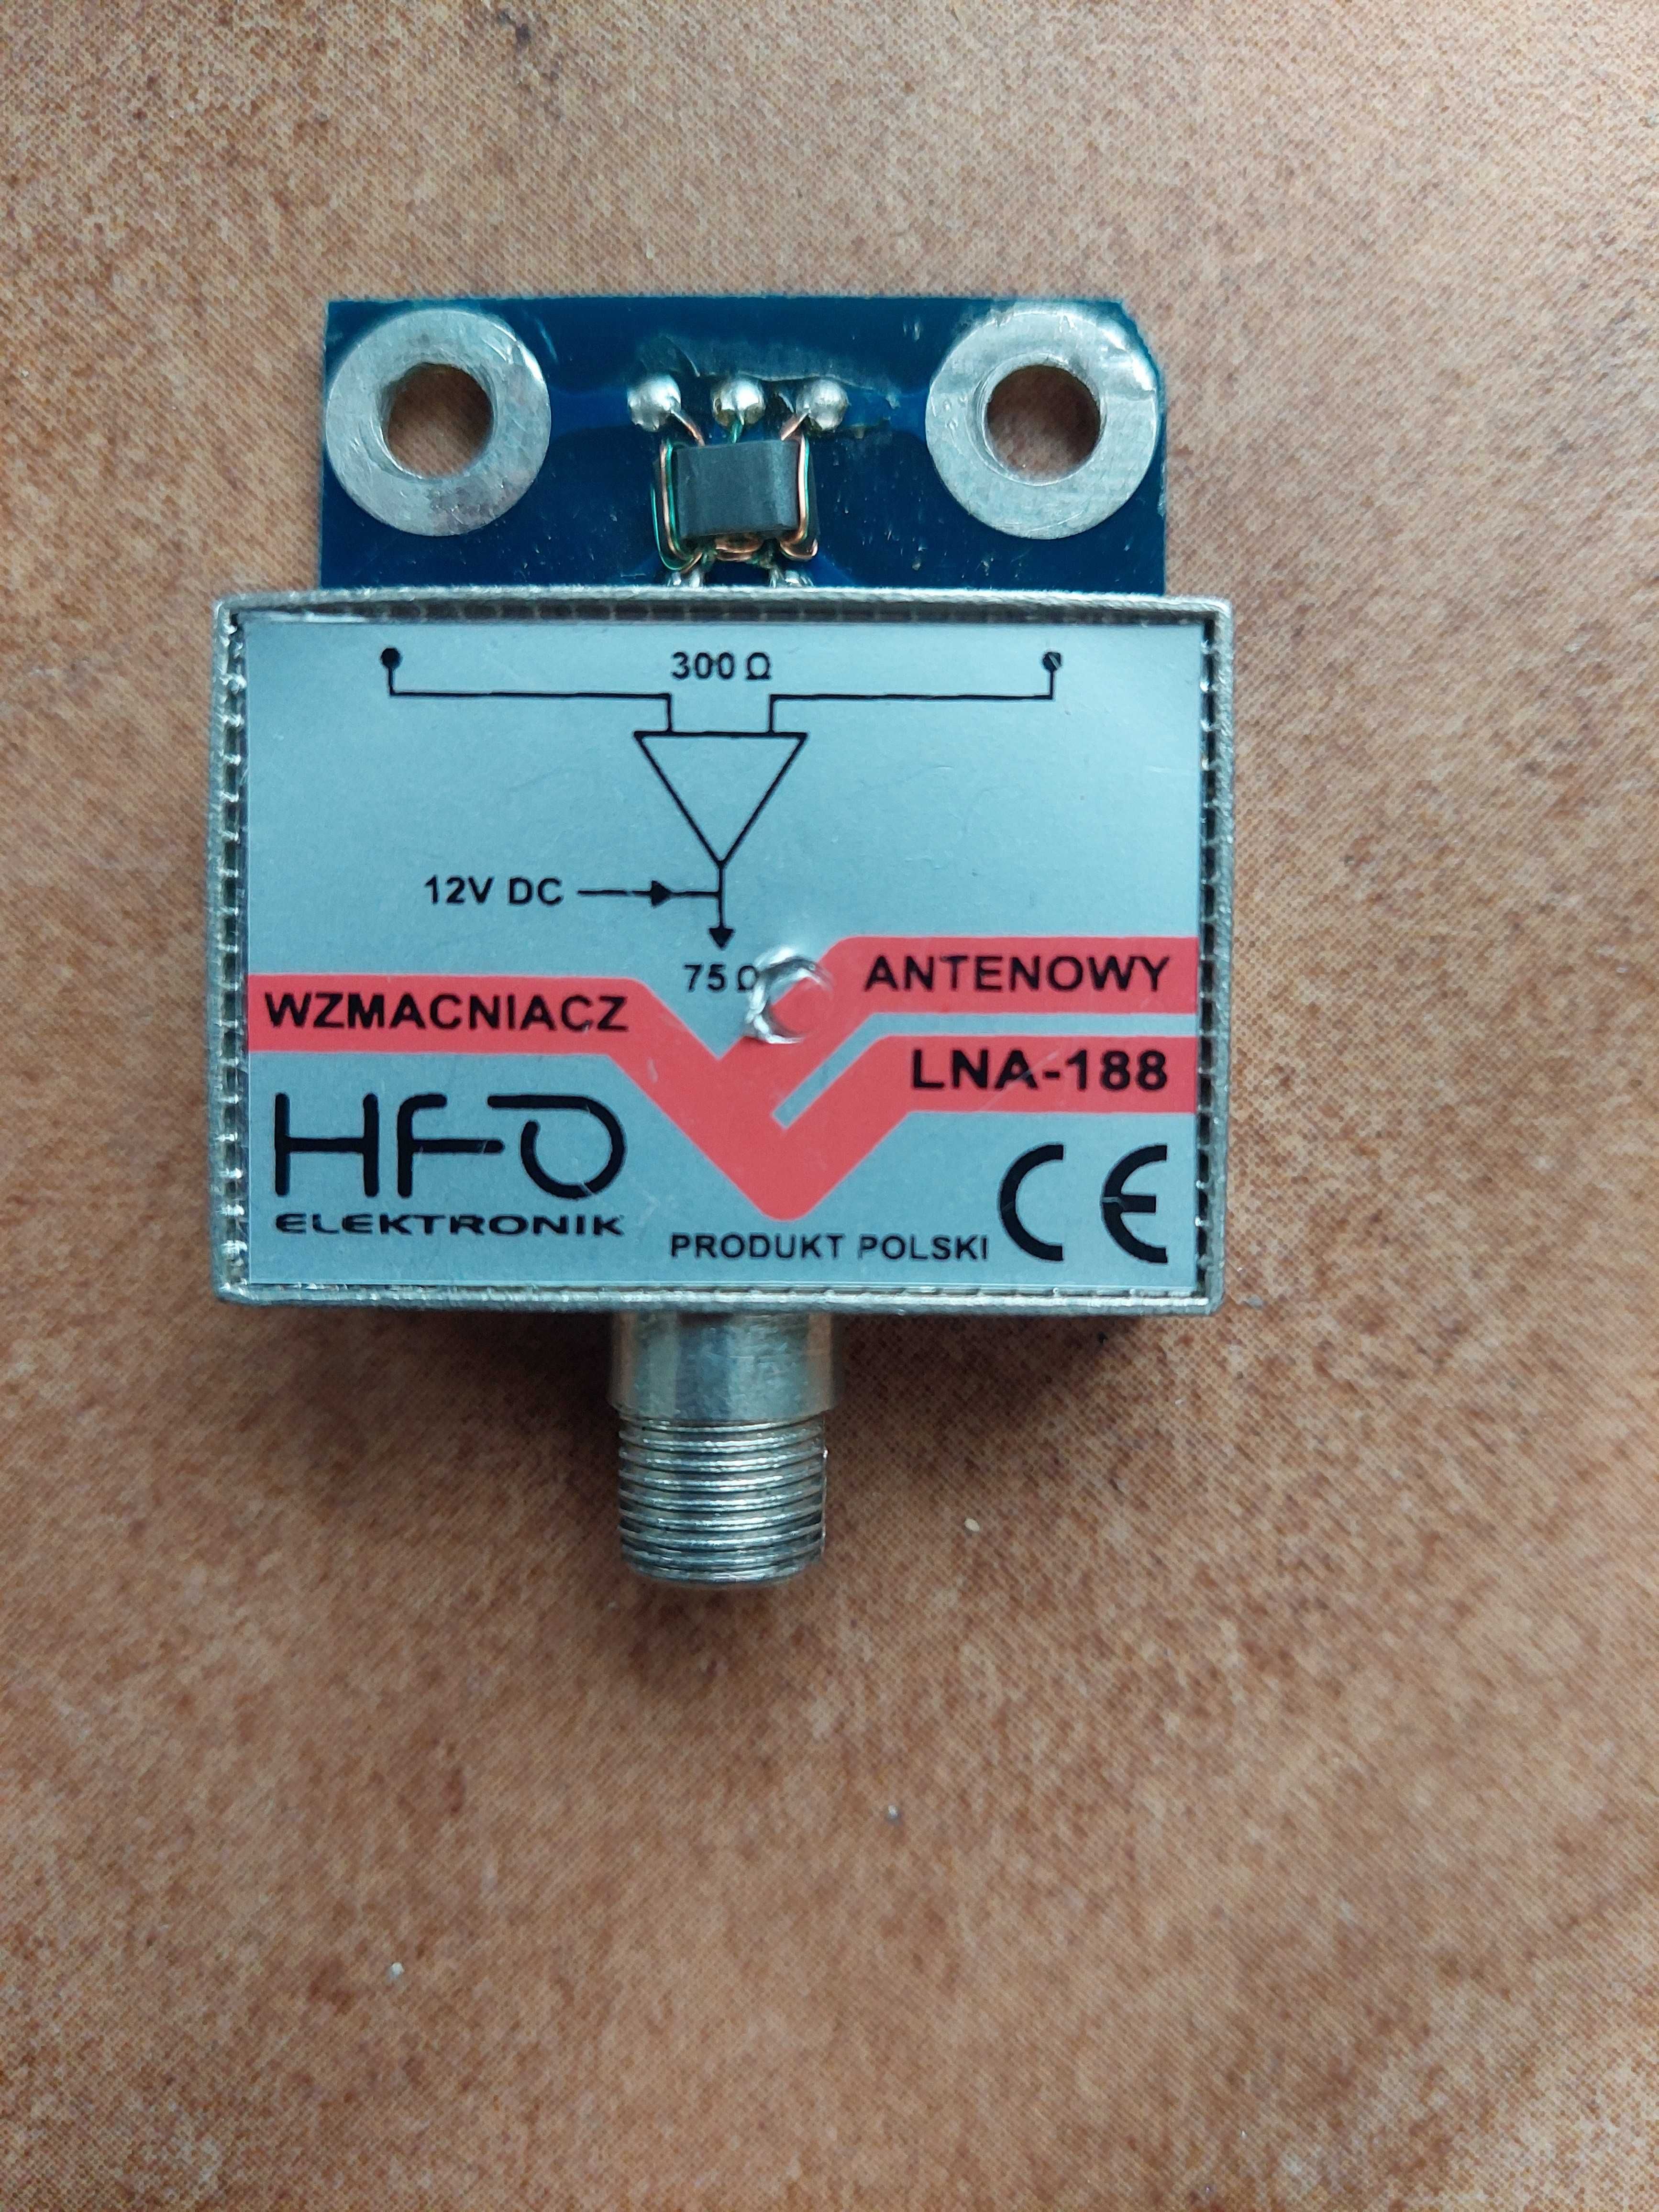 Wzmacniacz antenowy HFO Elektronik LNA-188